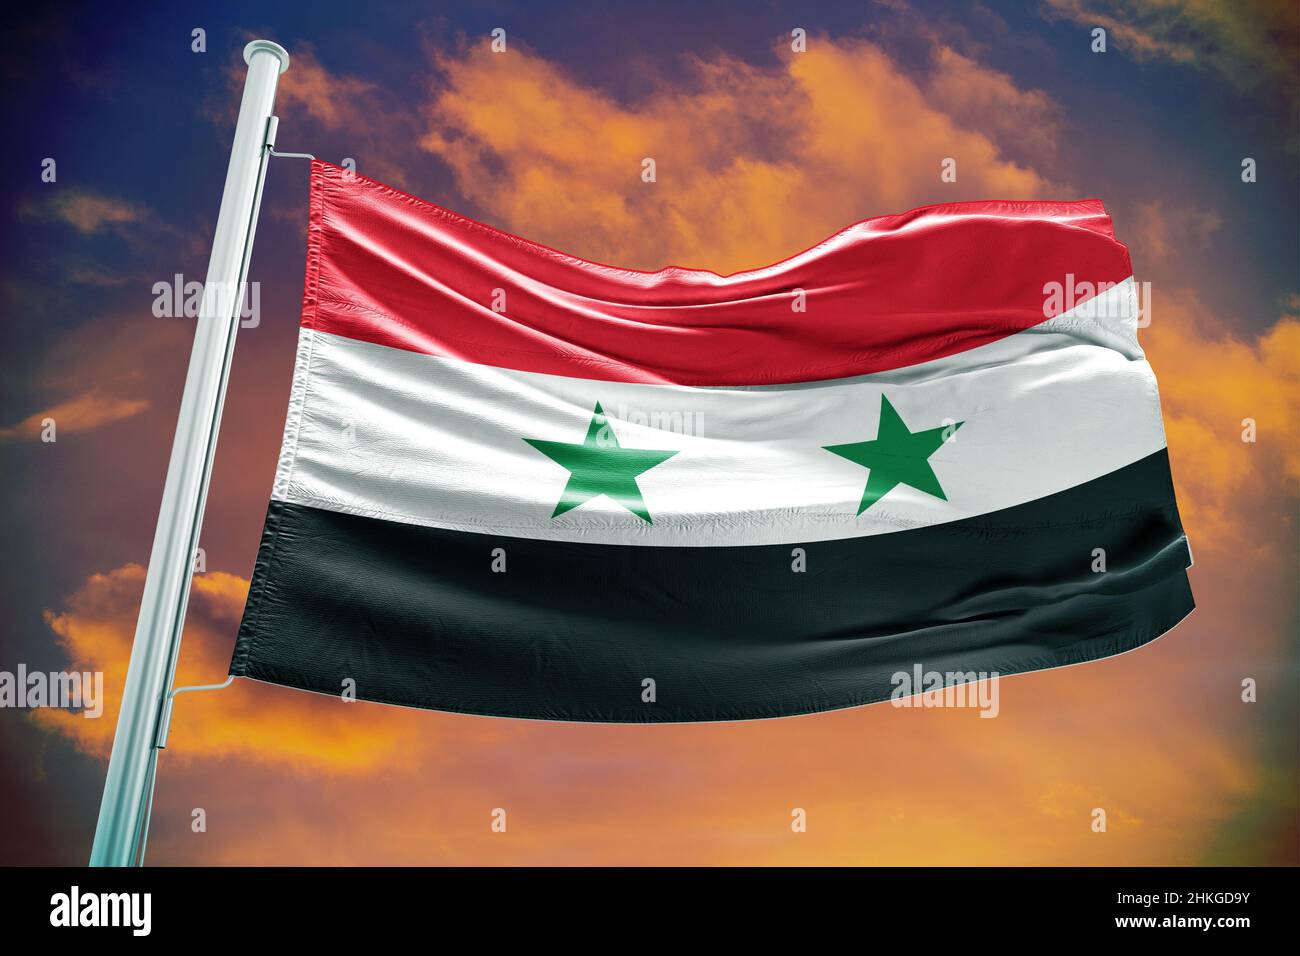 Syrien flagge und wappen, syrisch arabische republik Stock